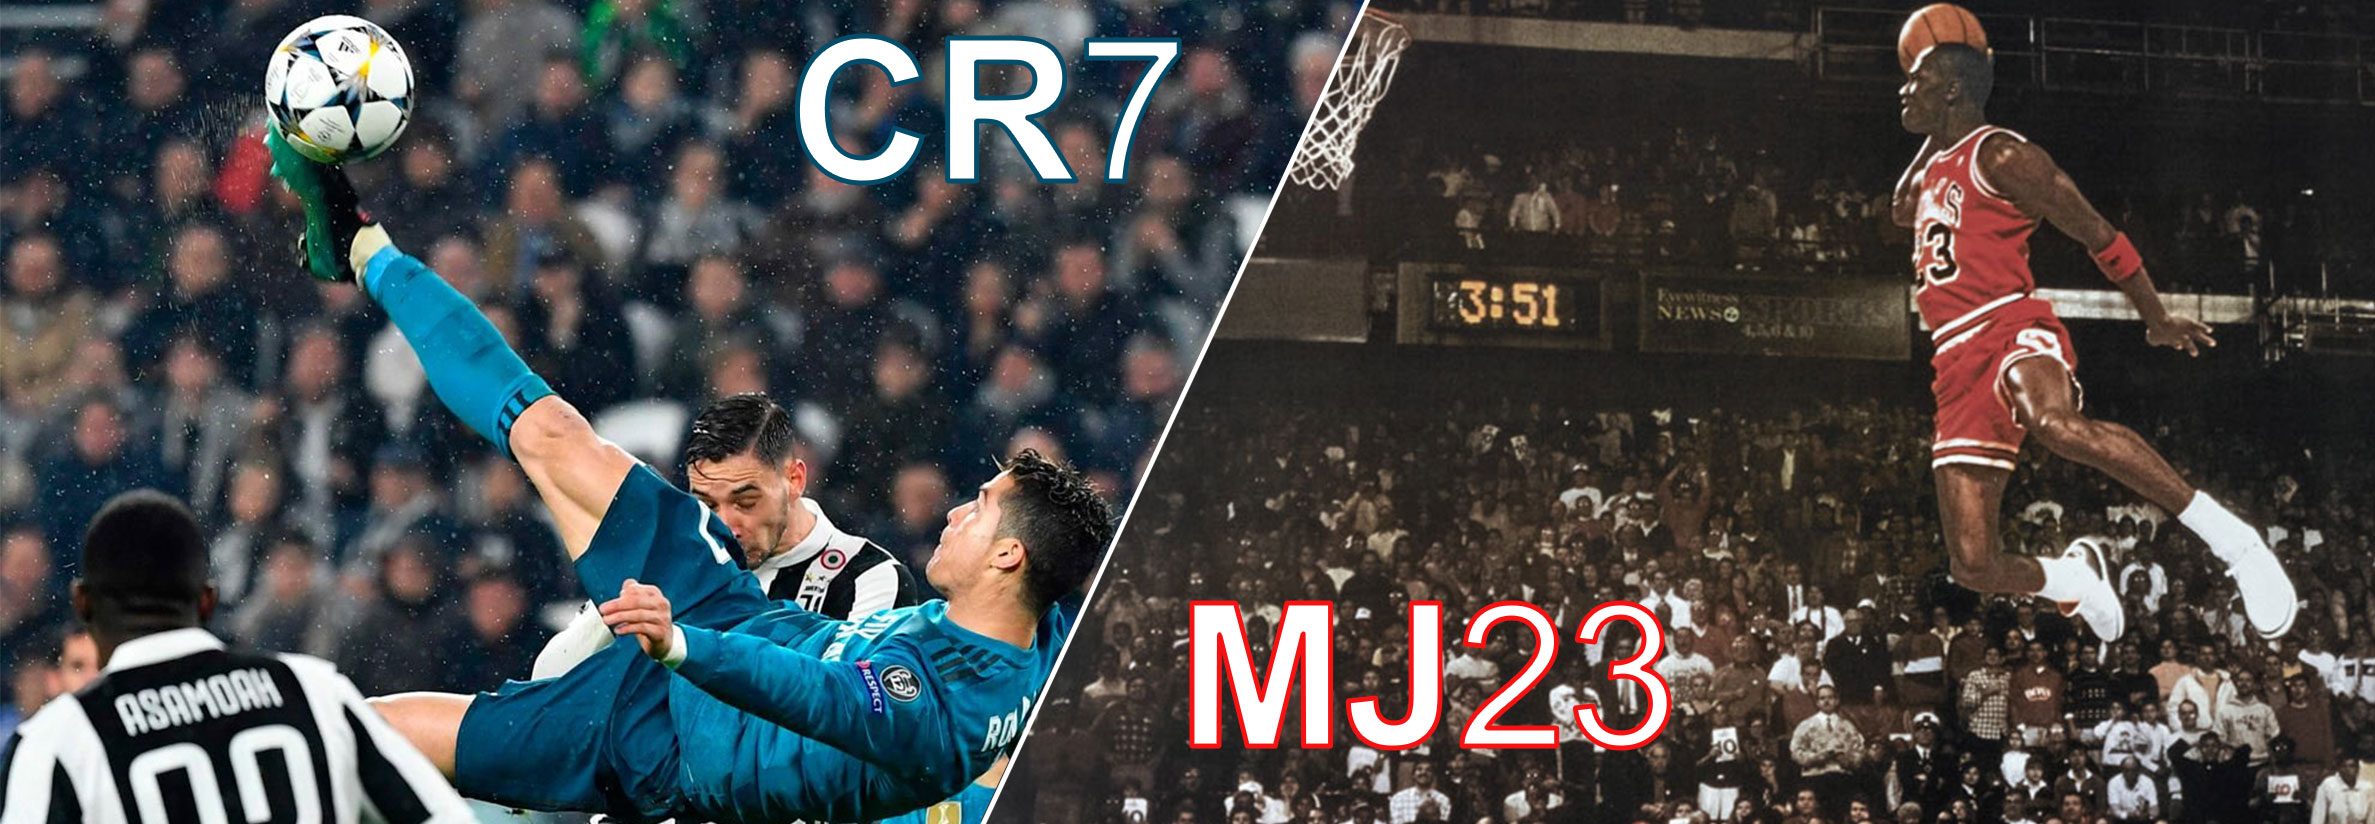 Michel Jordan e Cristiano Ronaldo